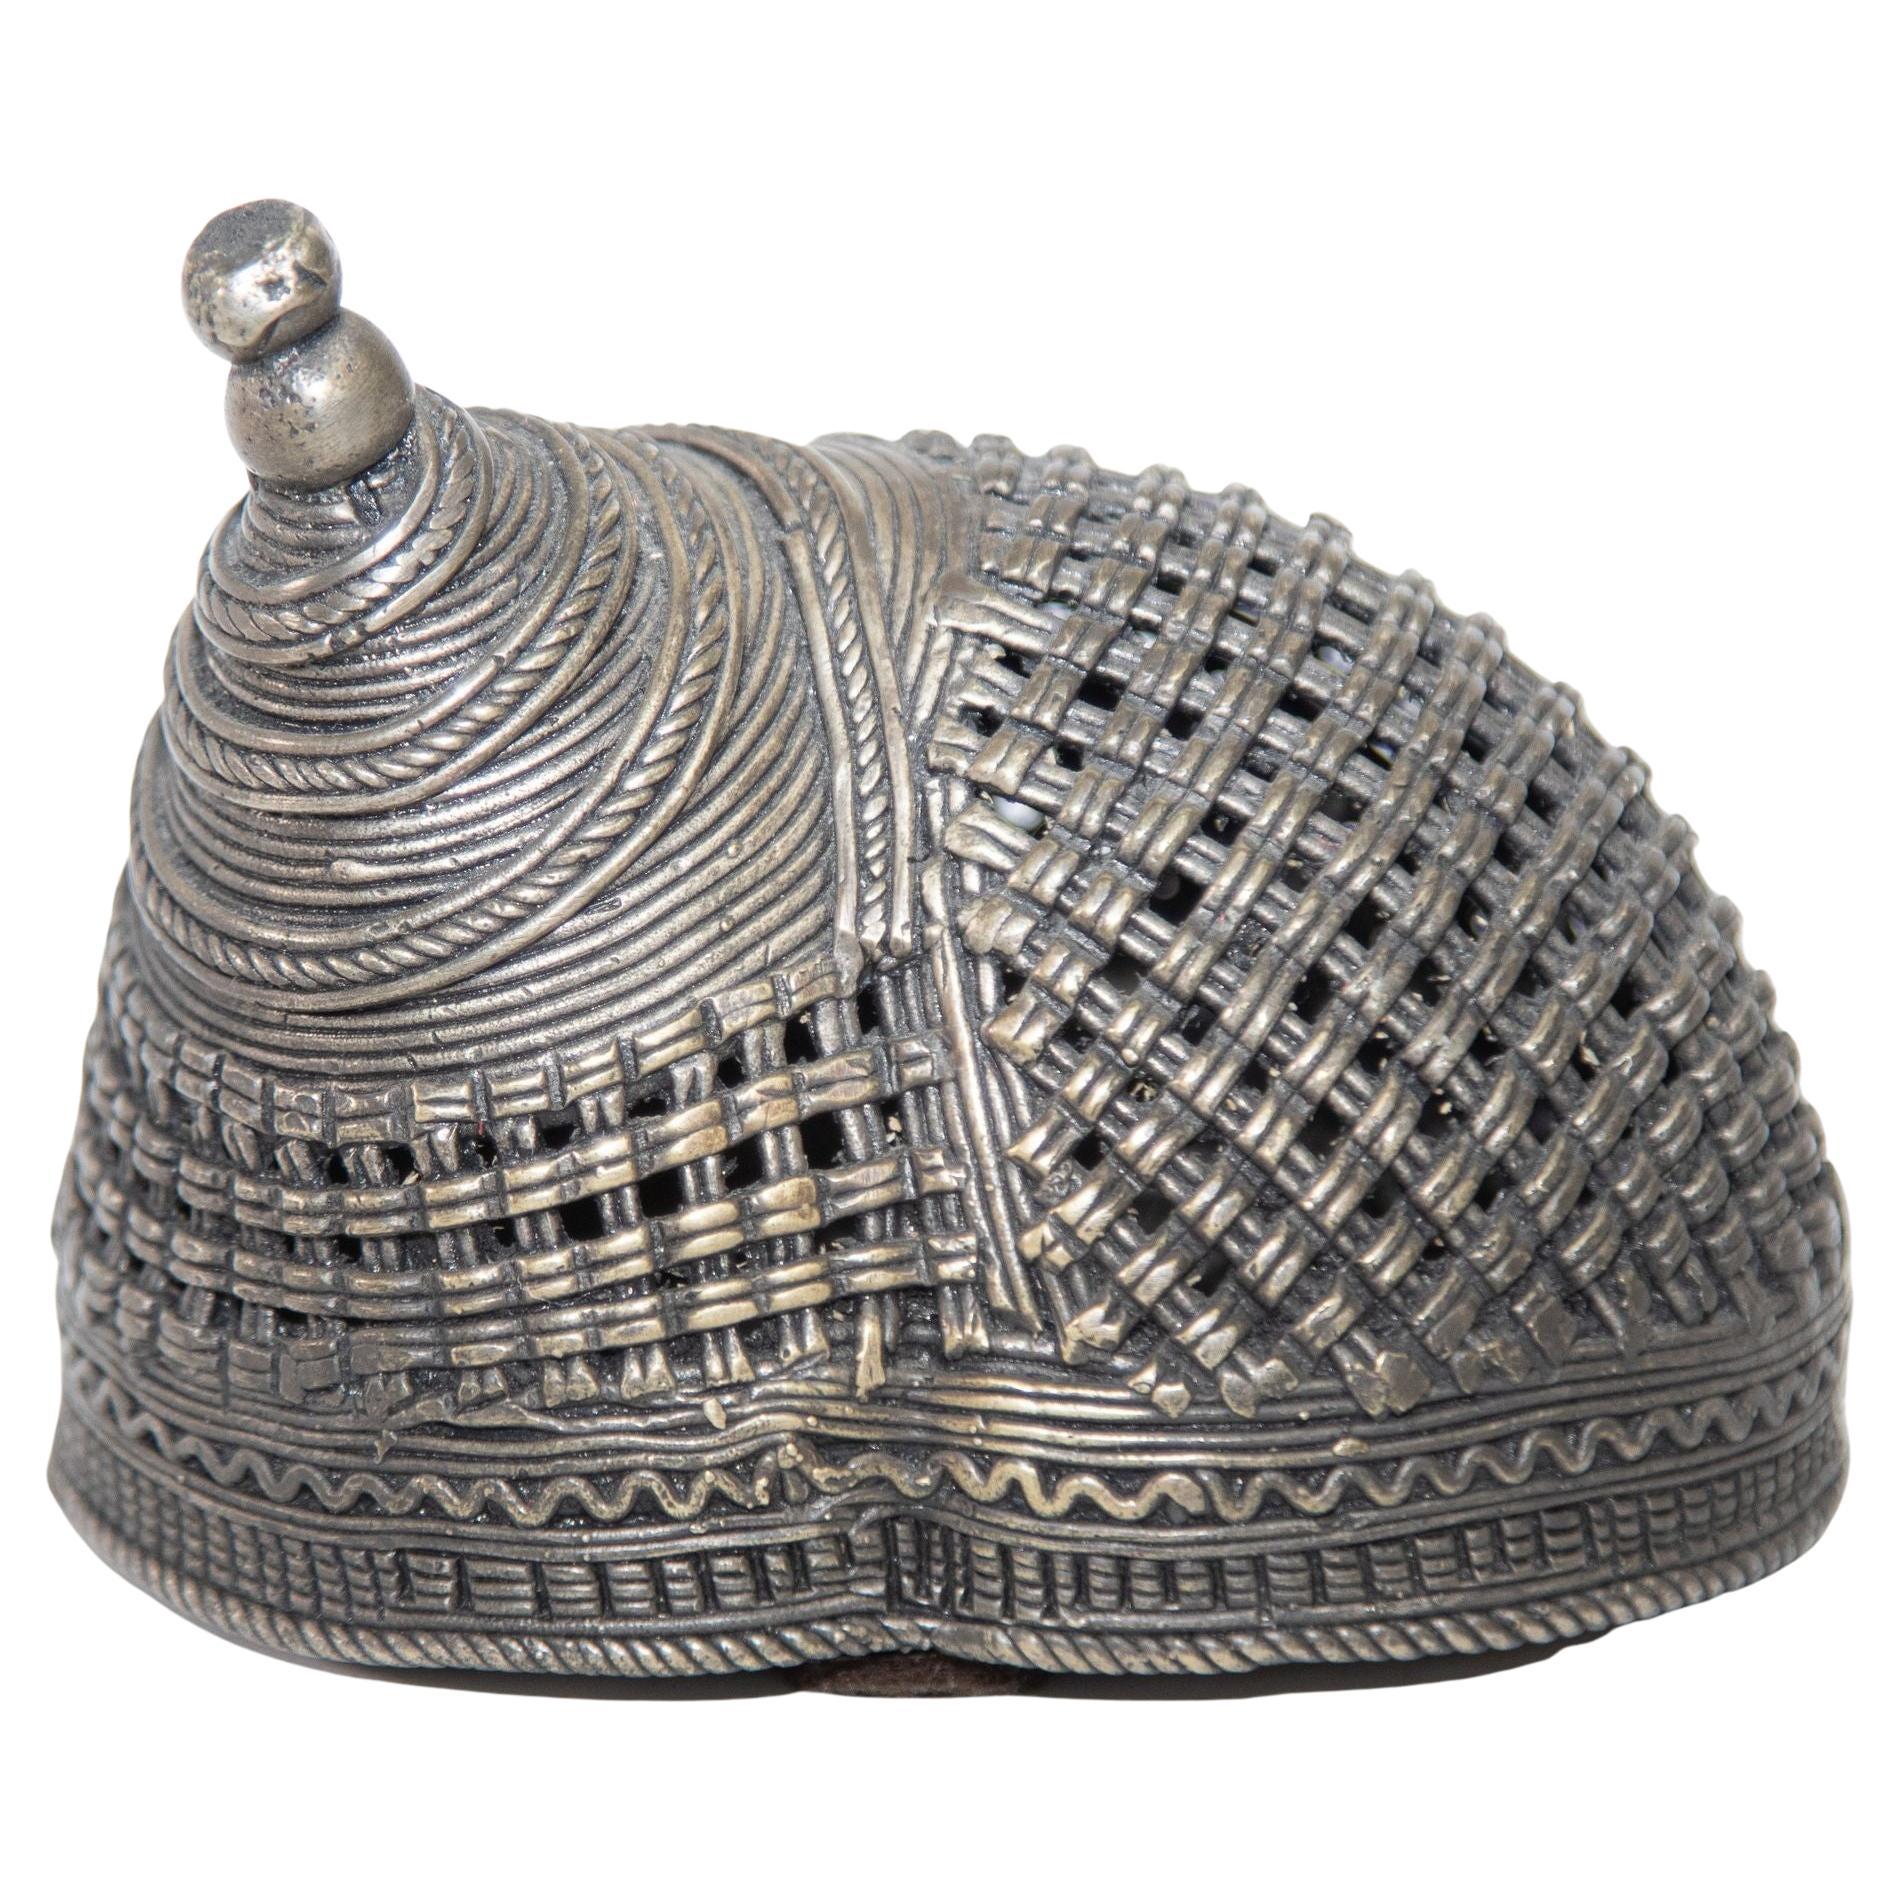 Indian Cast Brass Metal Incense Burner in a Snail Form